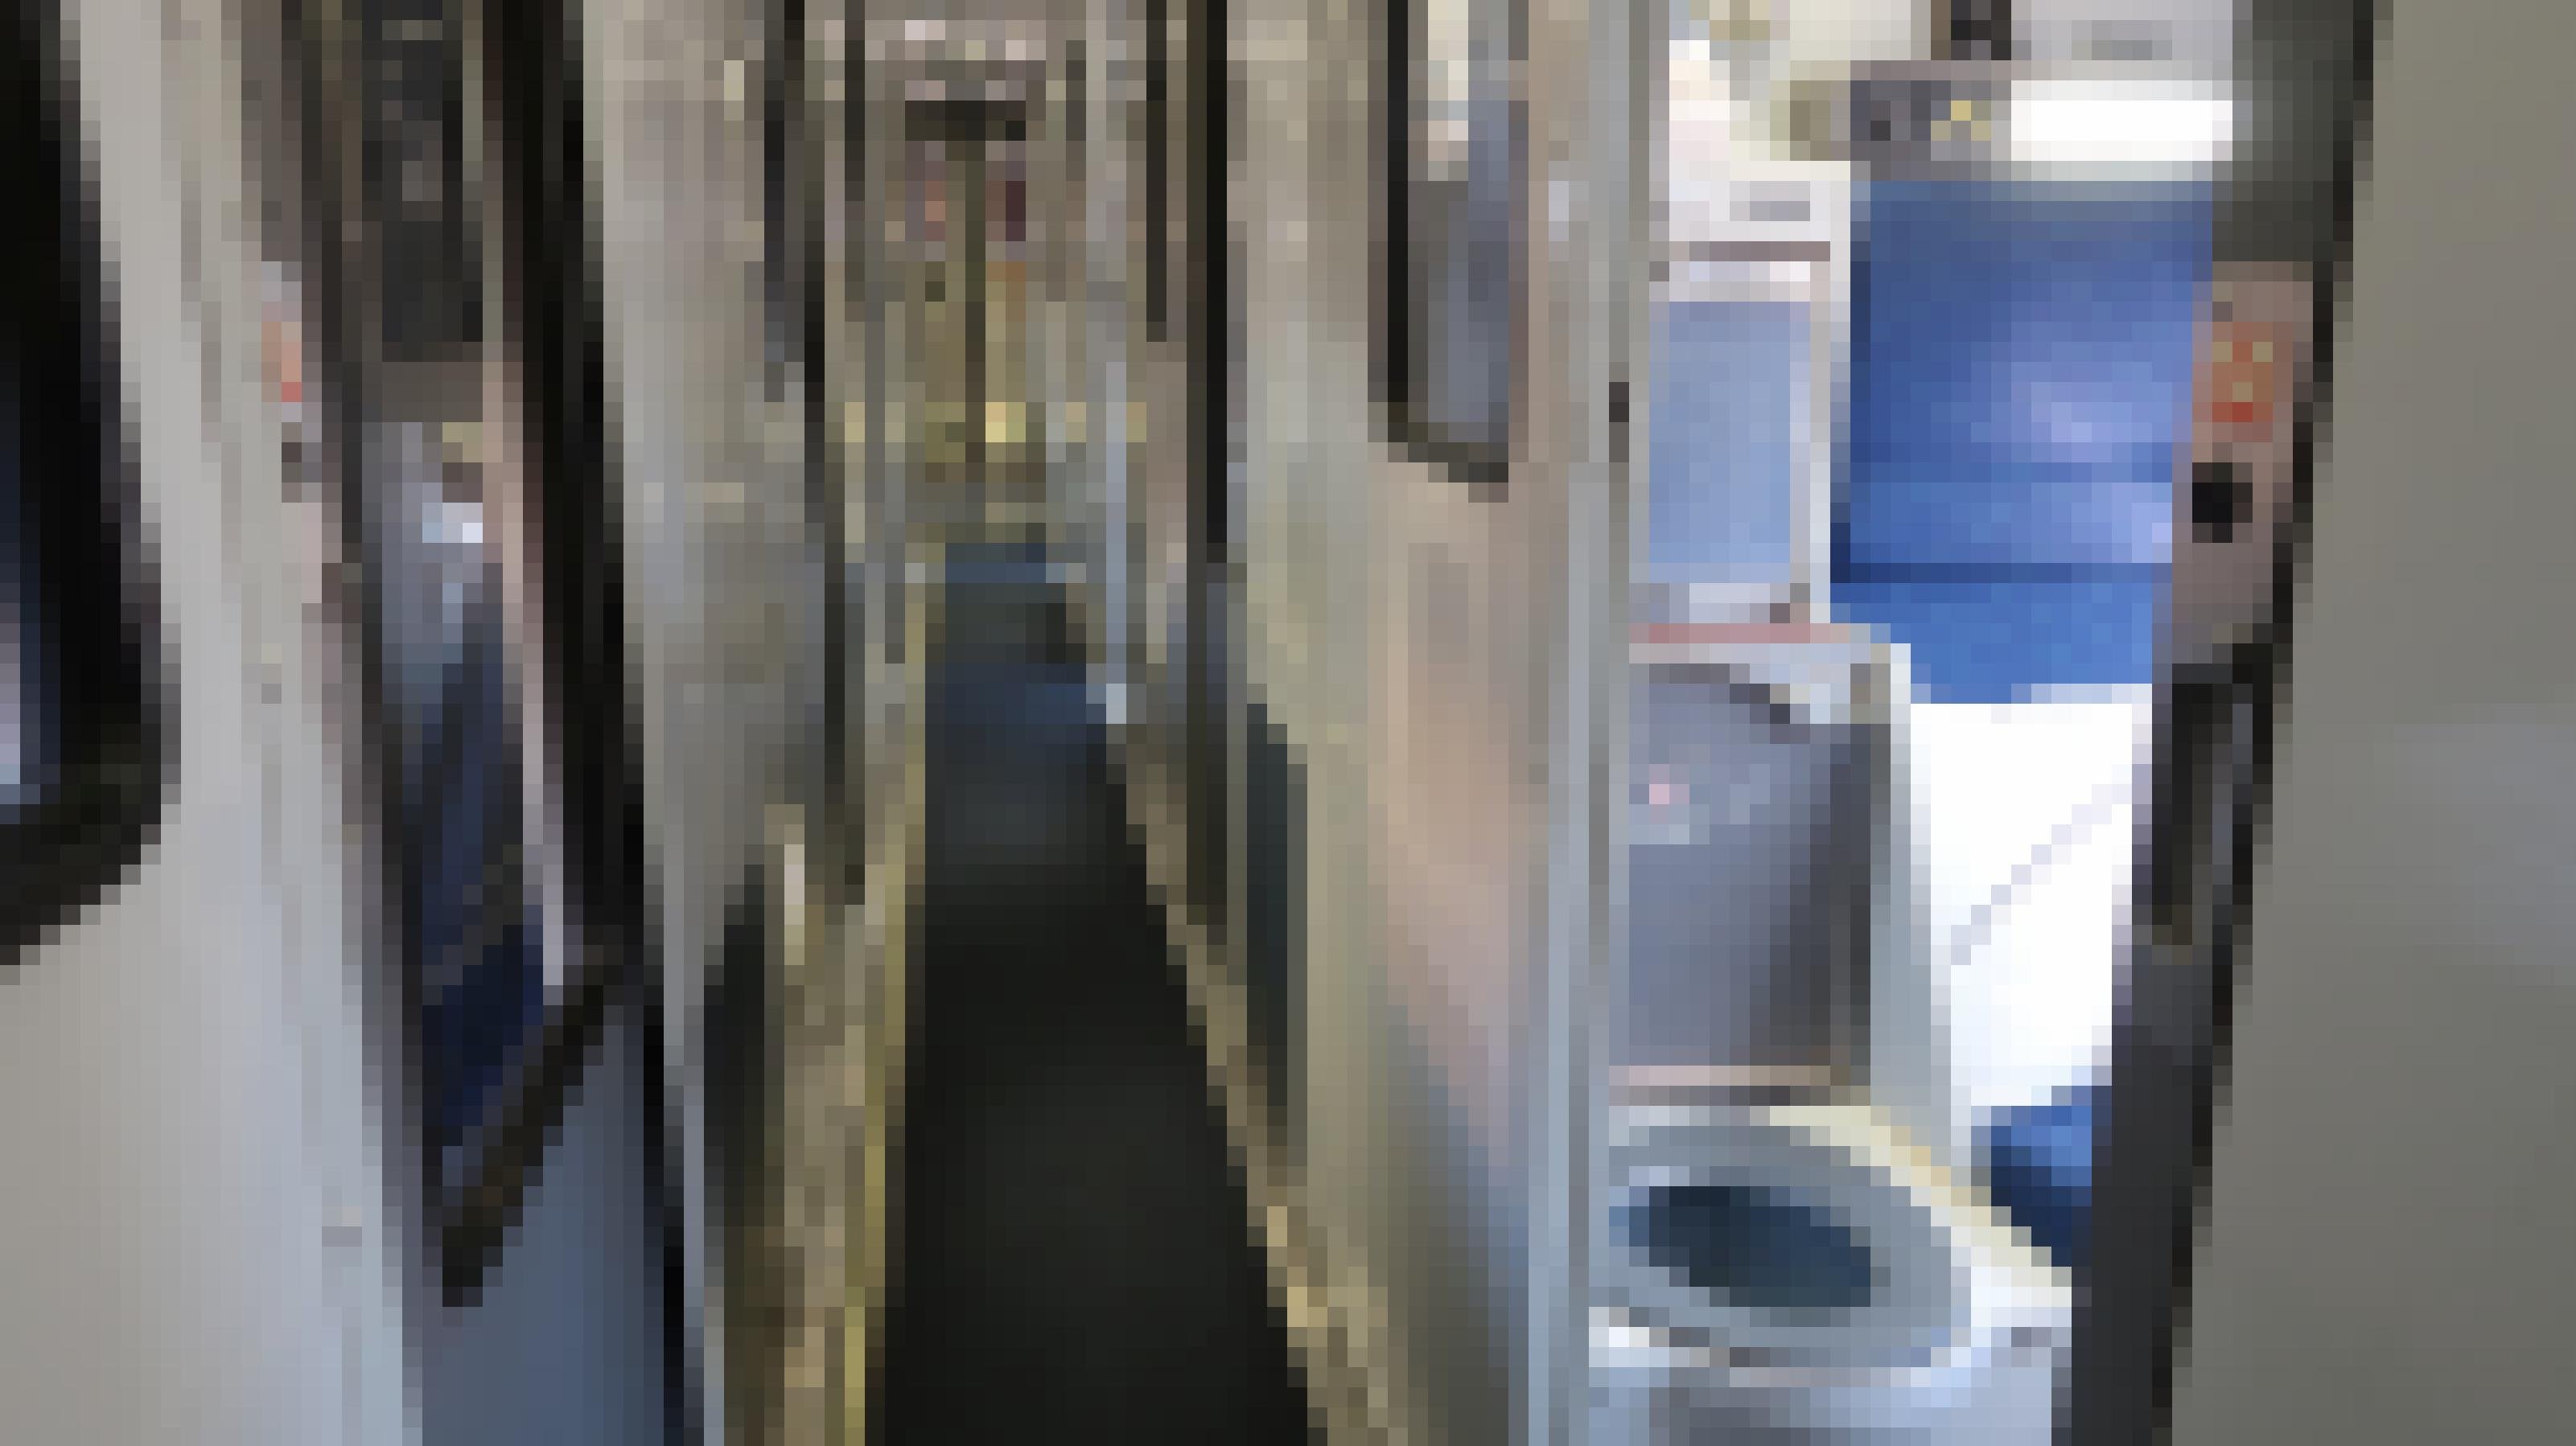 Blick in den Waggon eines Amtrak-Zuges. Im Privatabteil sieht man eine aufgeklappte Toilette